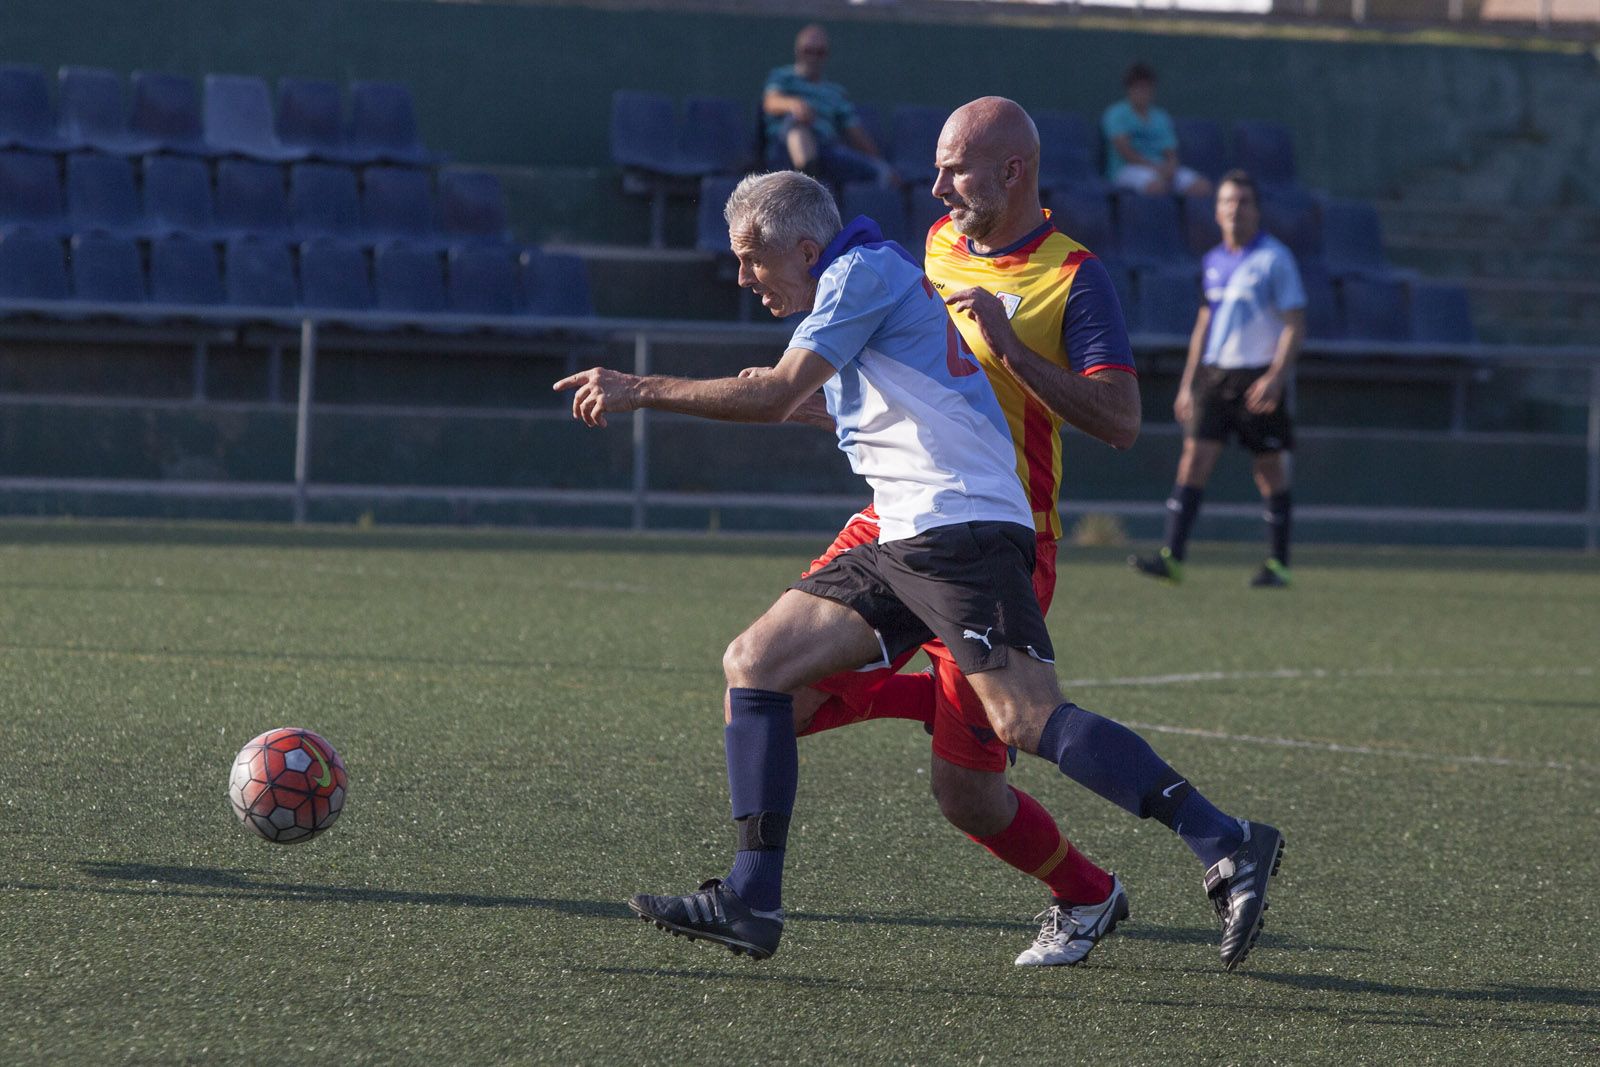 Partit de futbol entre els veterans del Junior FC i els veterans de la selecció catalana al Junior FC. FOTOS. Lali Puig